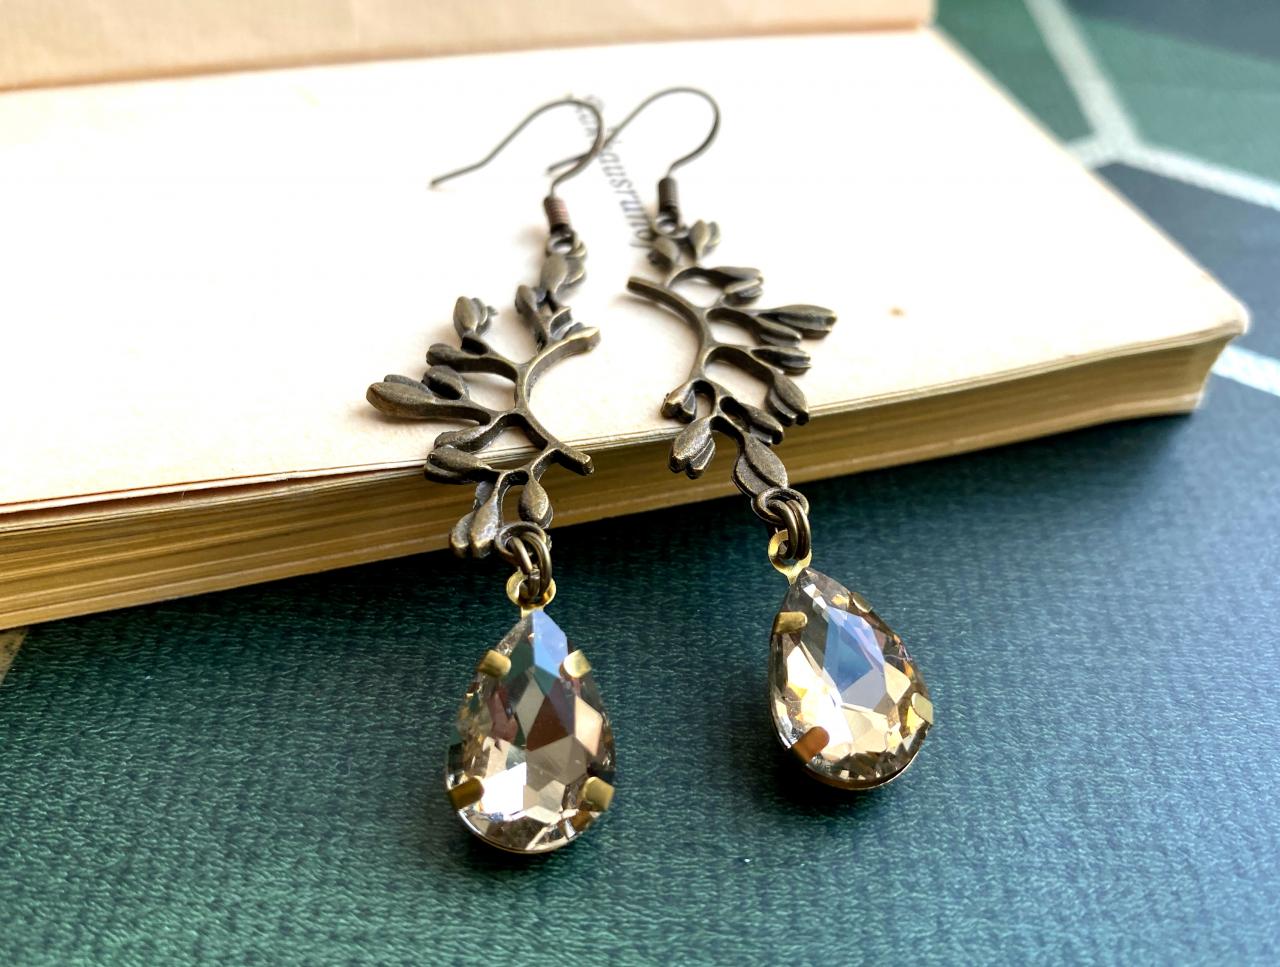 Gorgeous Mistletoe Earrings With Glass Pendants, Selma Dreams